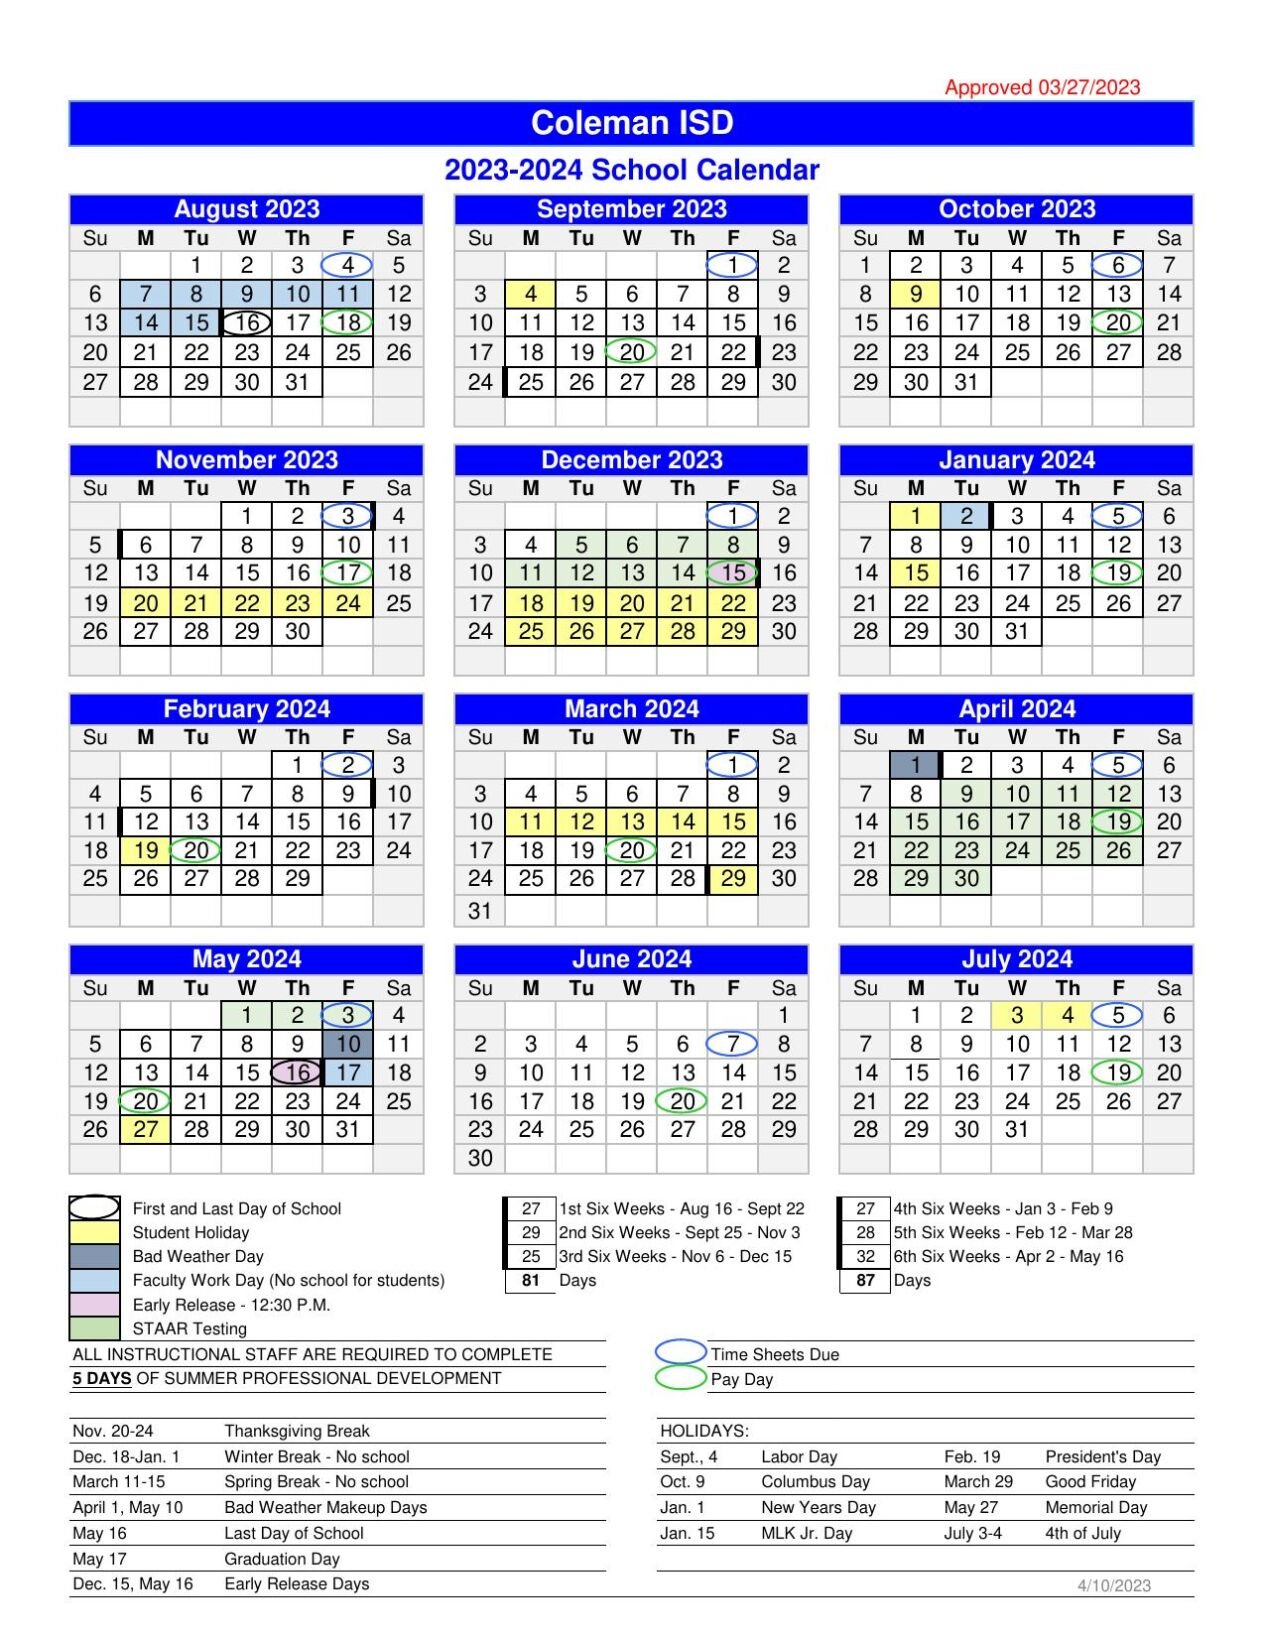 cisd-23-24-calendar